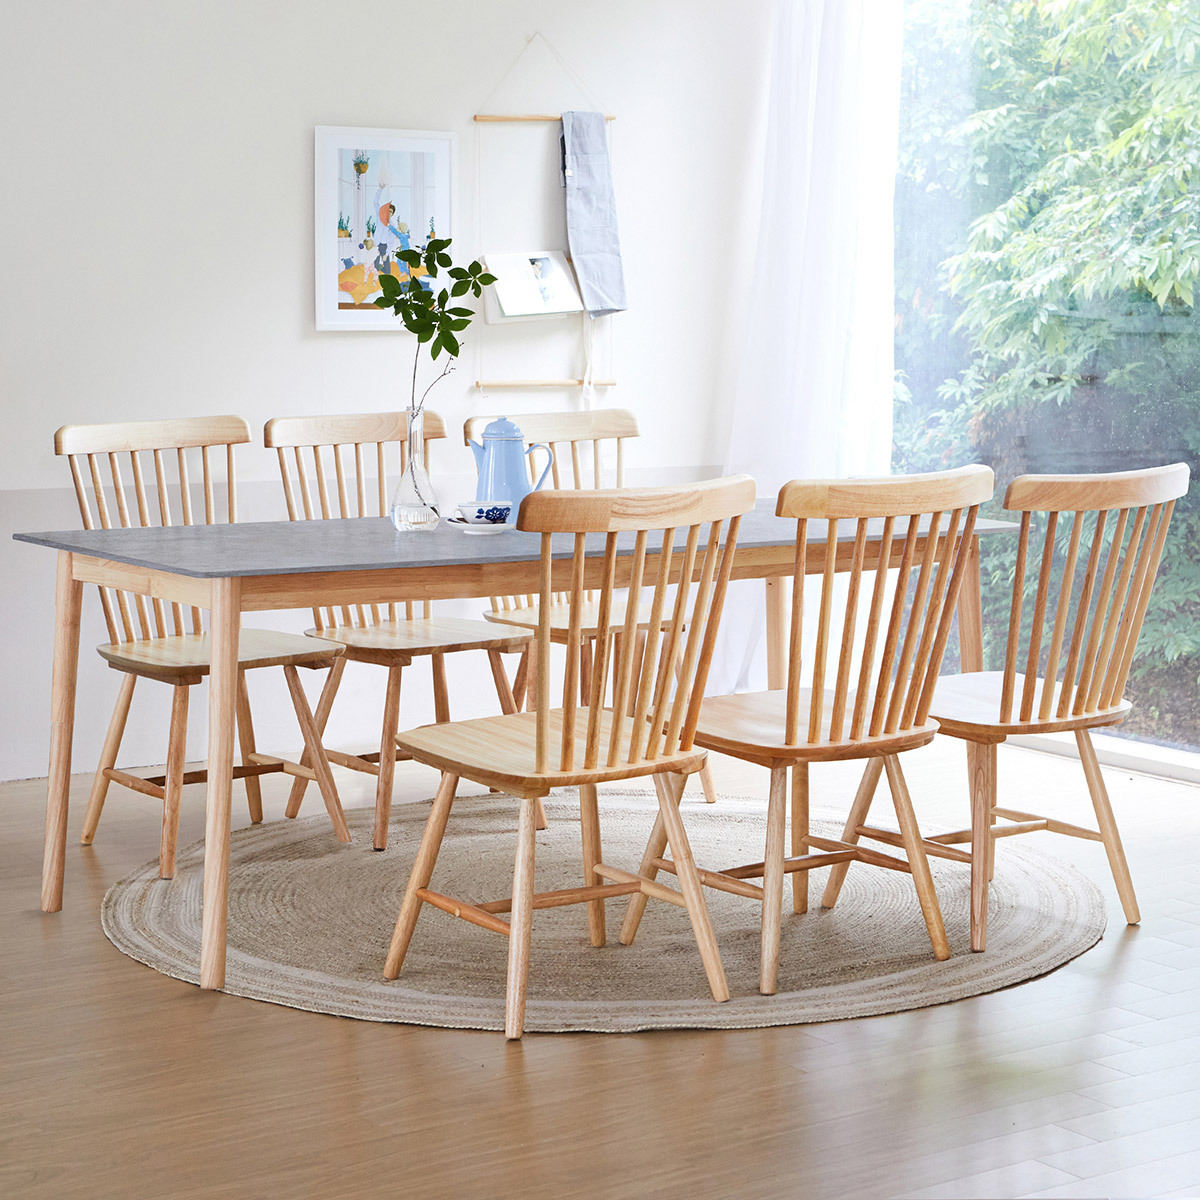 리비니아 TOTO 포세린 세라믹 6인 식탁세트 2colors - 내추럴(의자) + 그레이(세라믹 상판)